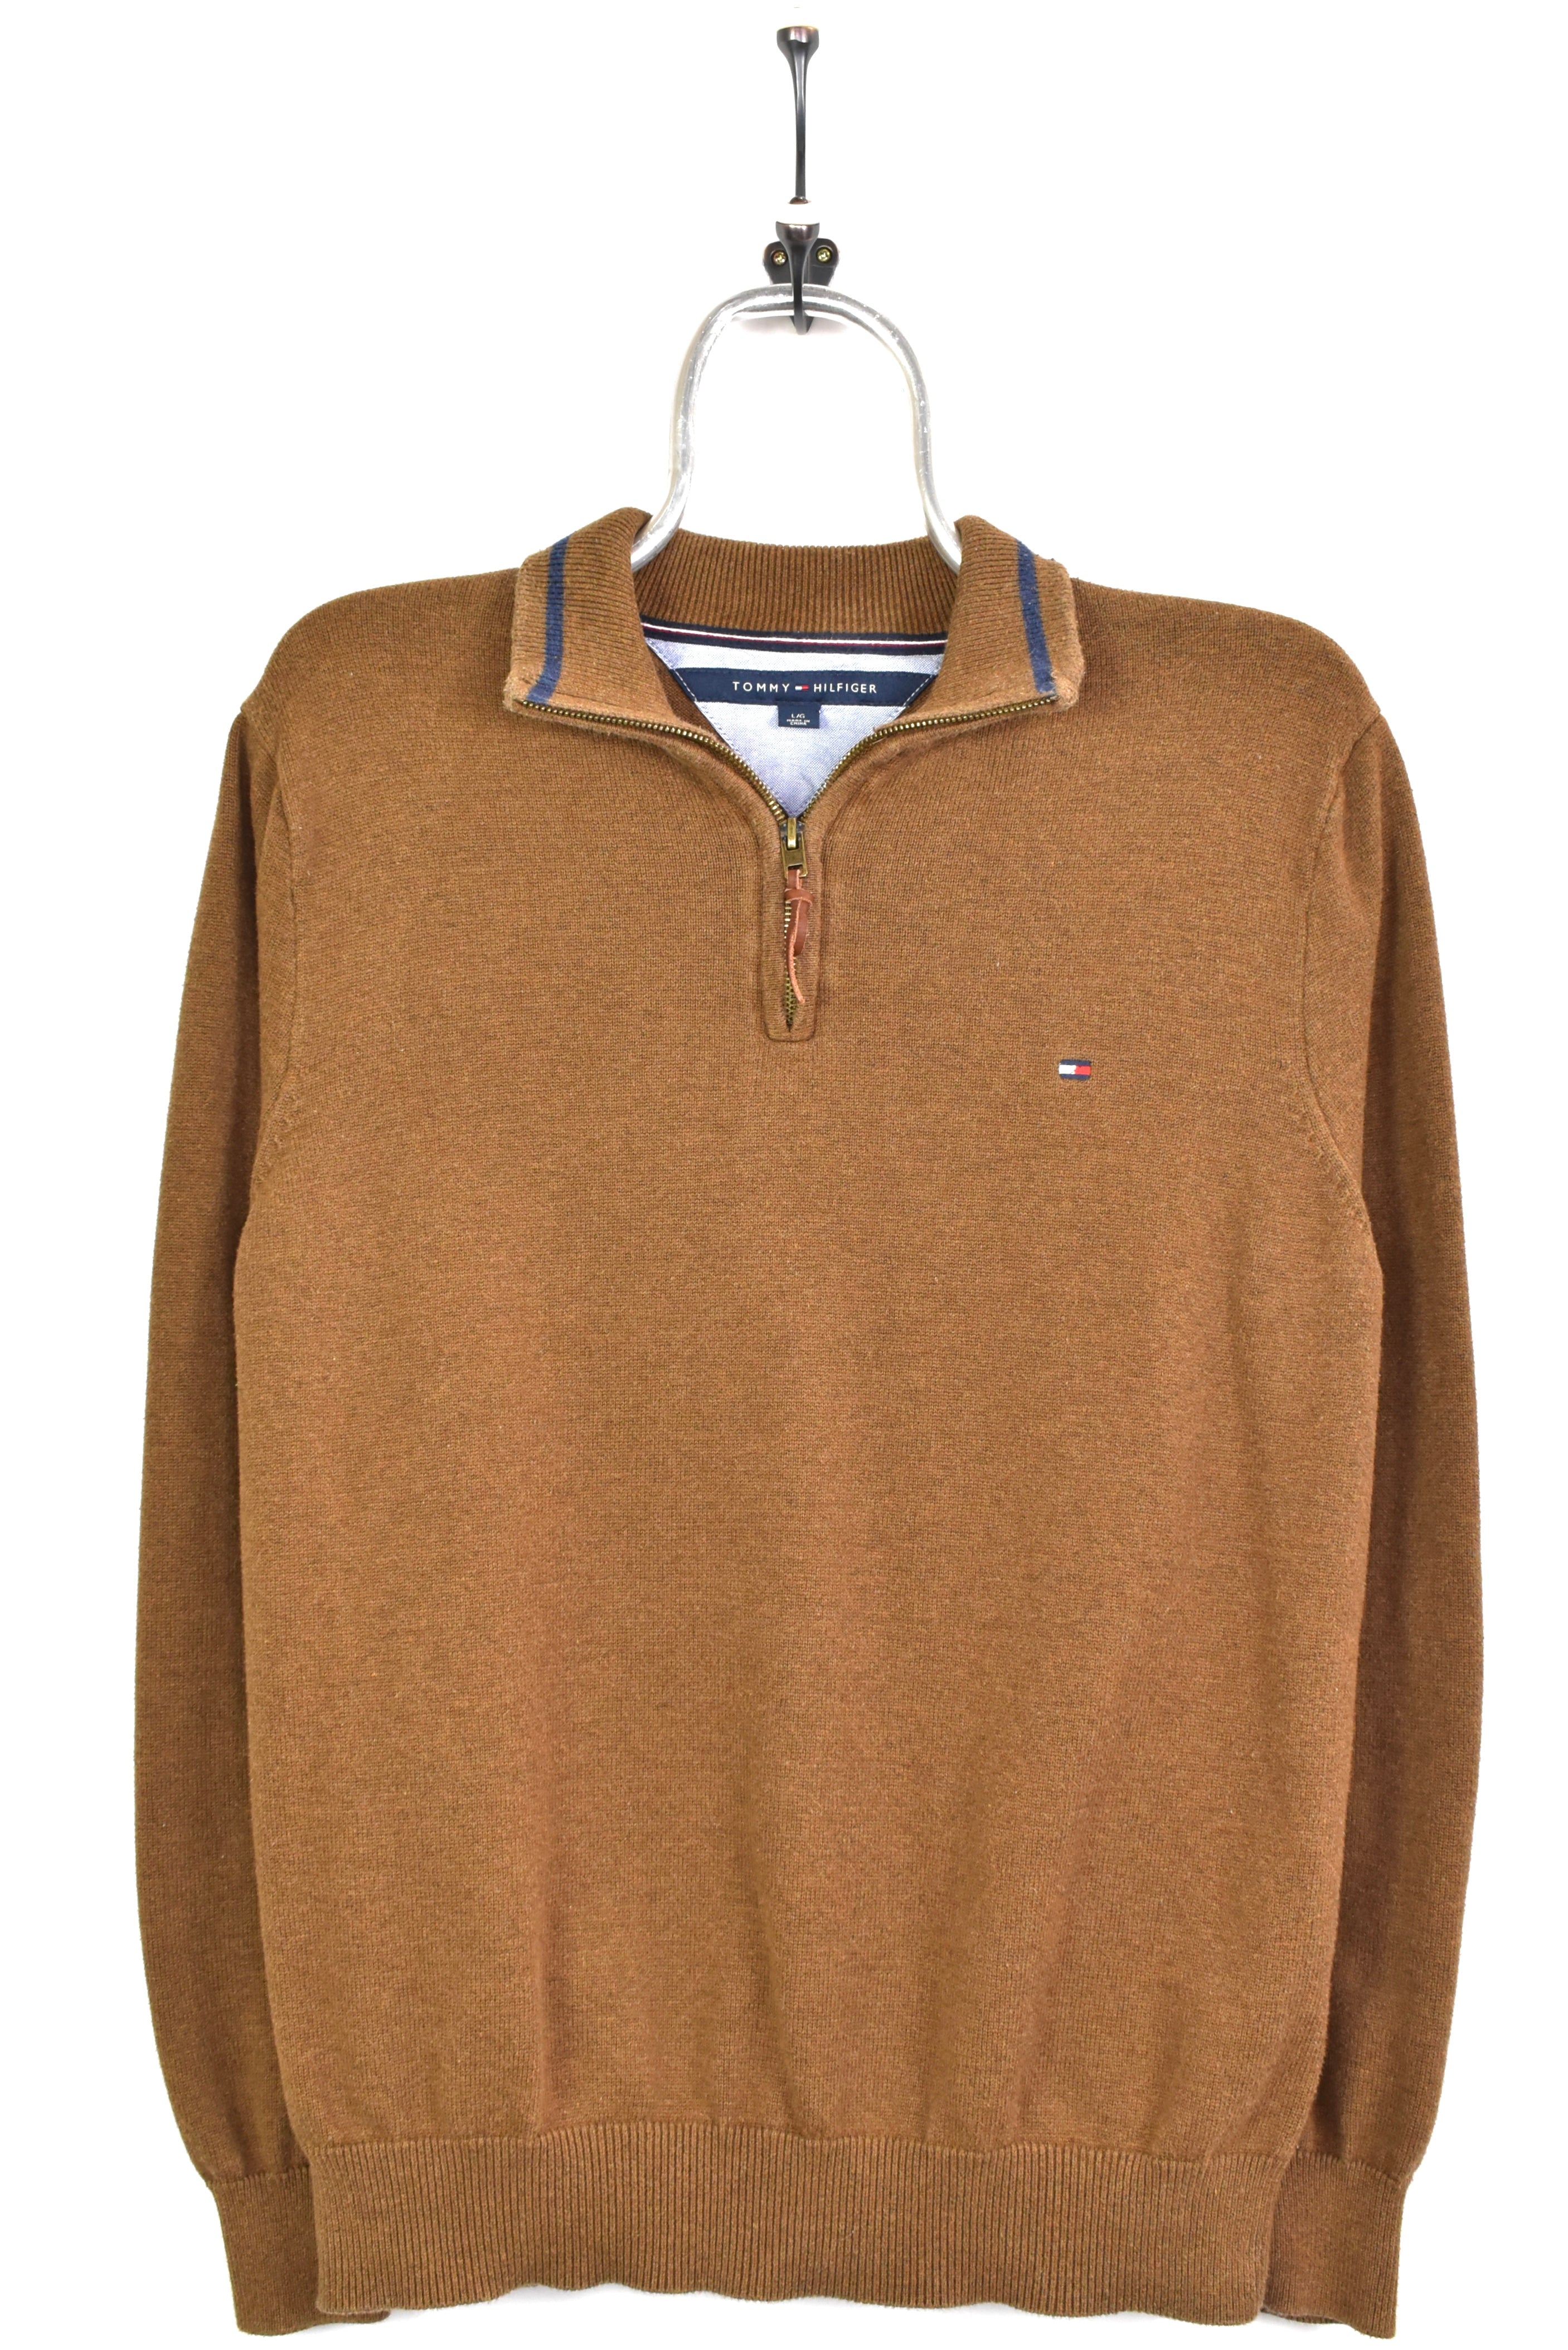 Vintage Tommy Hilfiger embroidered 1/4 zip brown sweatshirt | Medium TOMMY HILFIGER